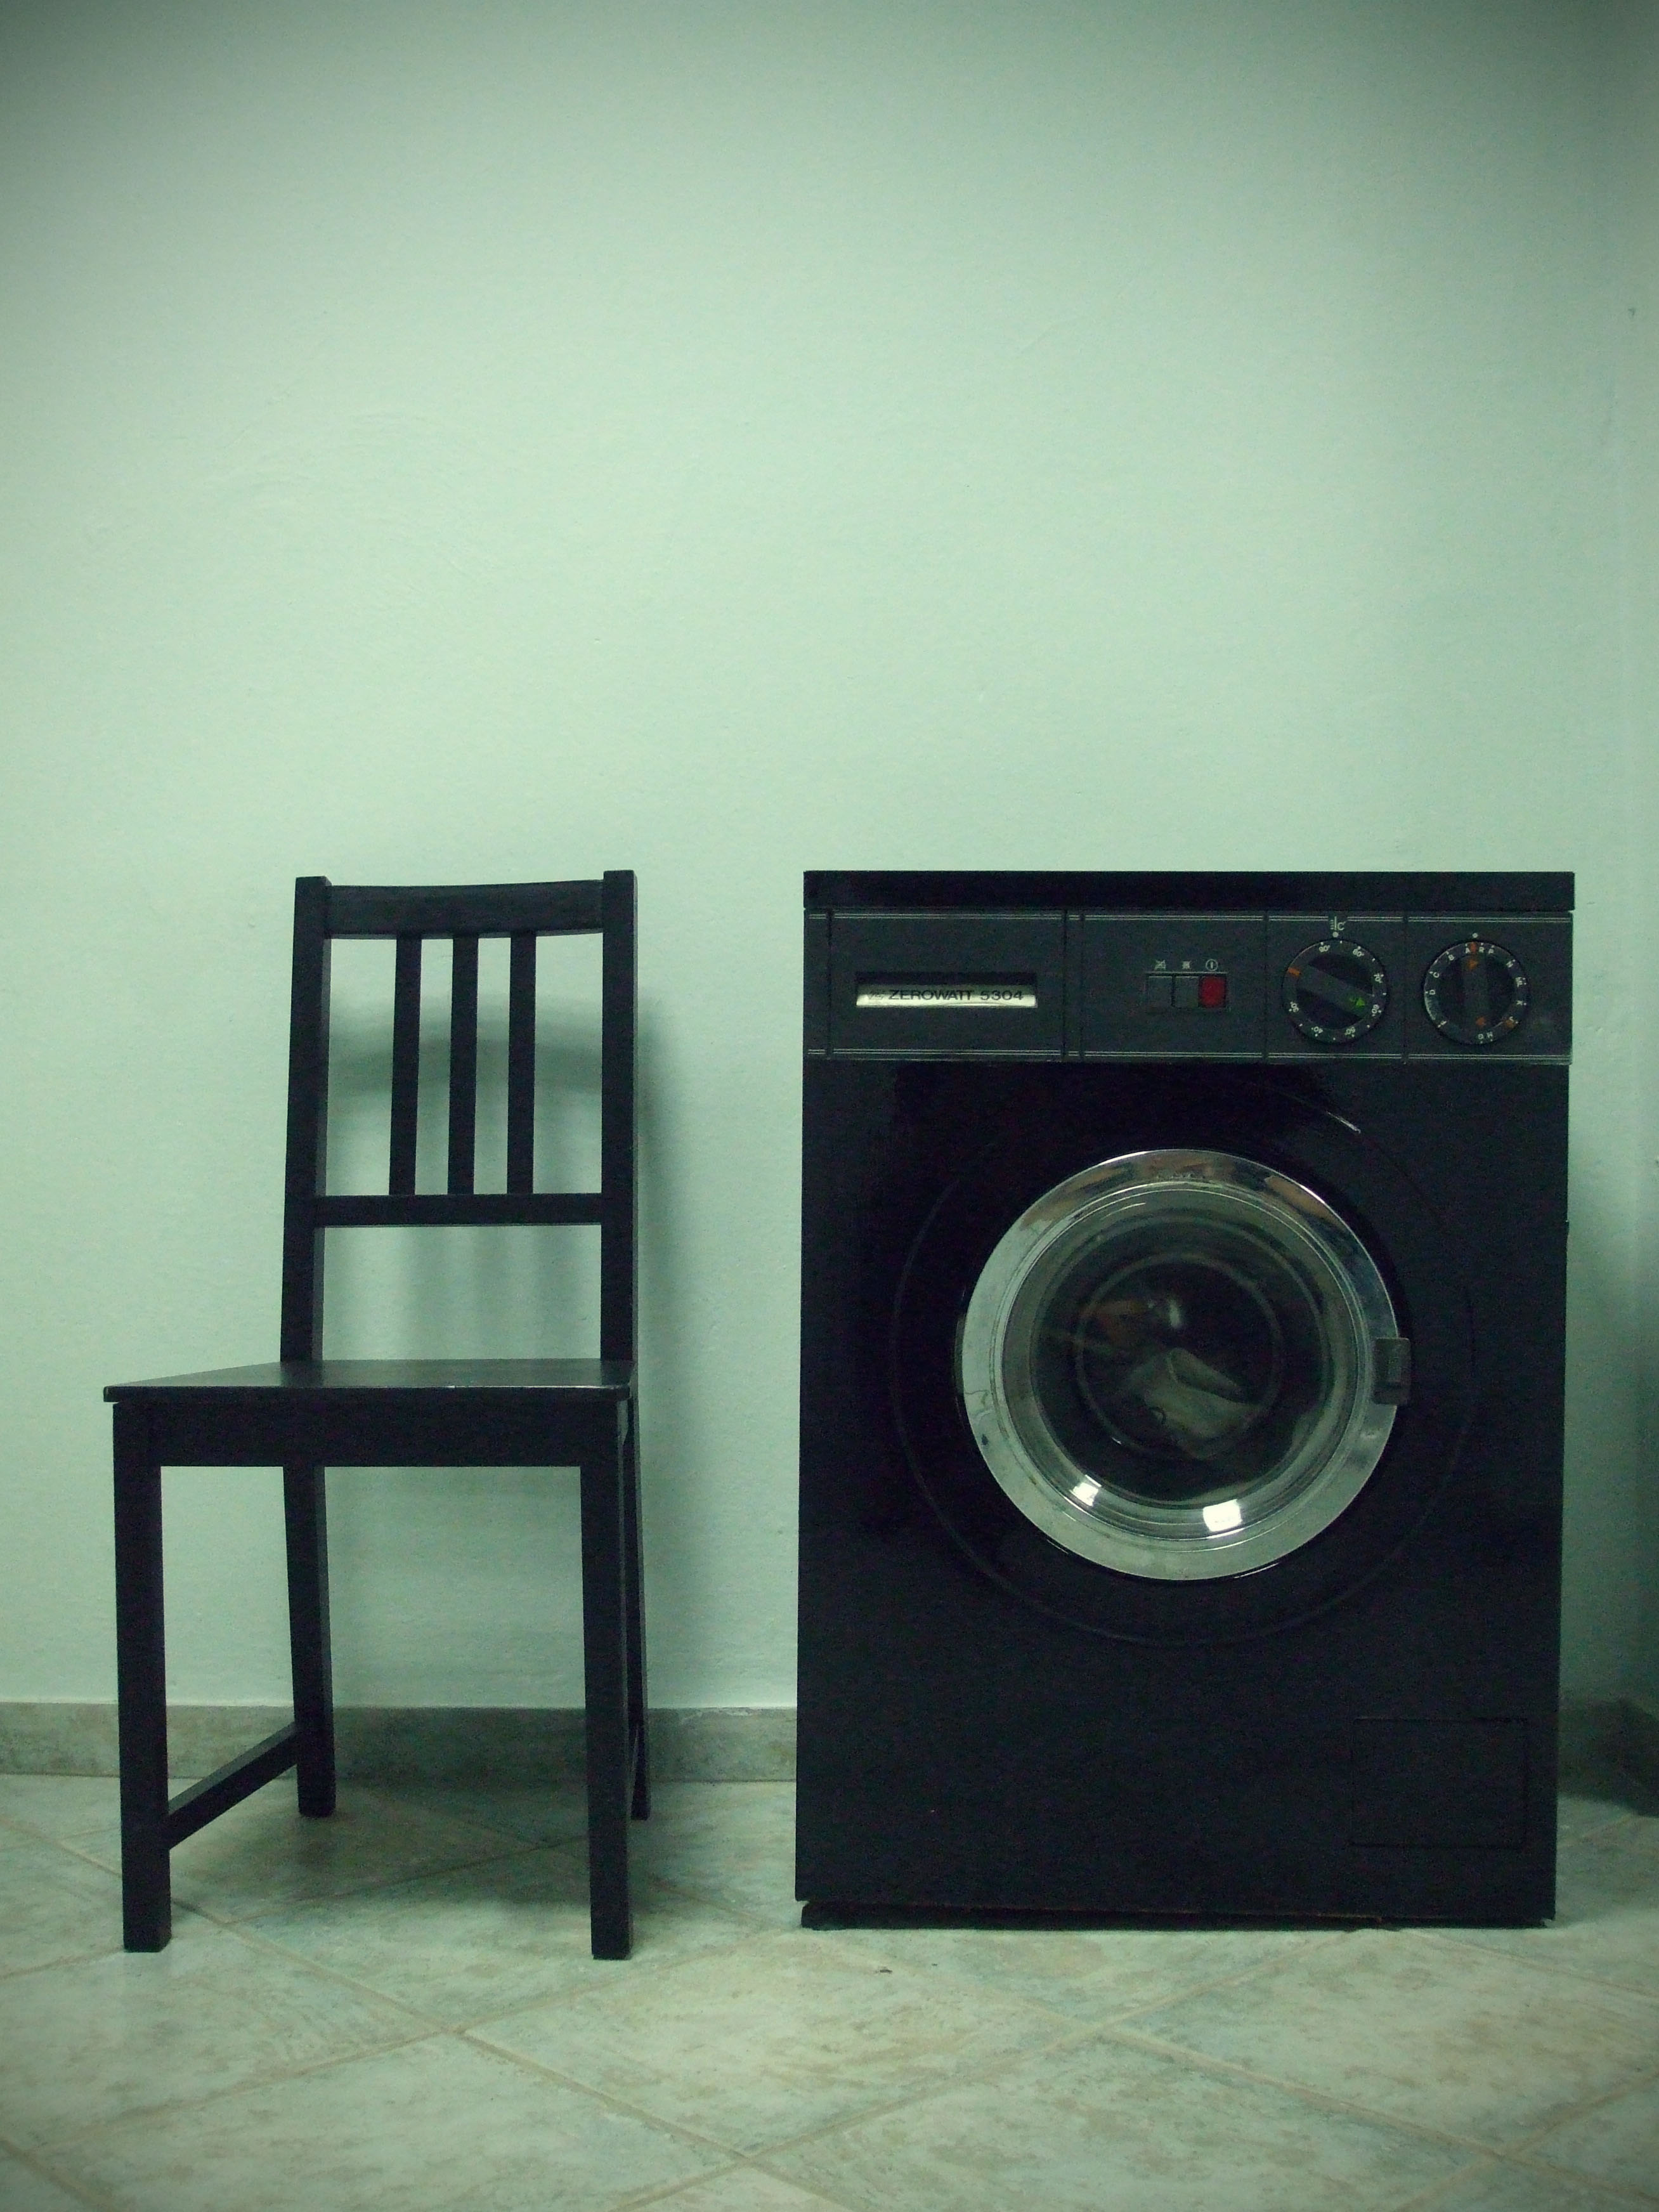 SHOES IN THE WASHING MACHINE @ Washing Machines